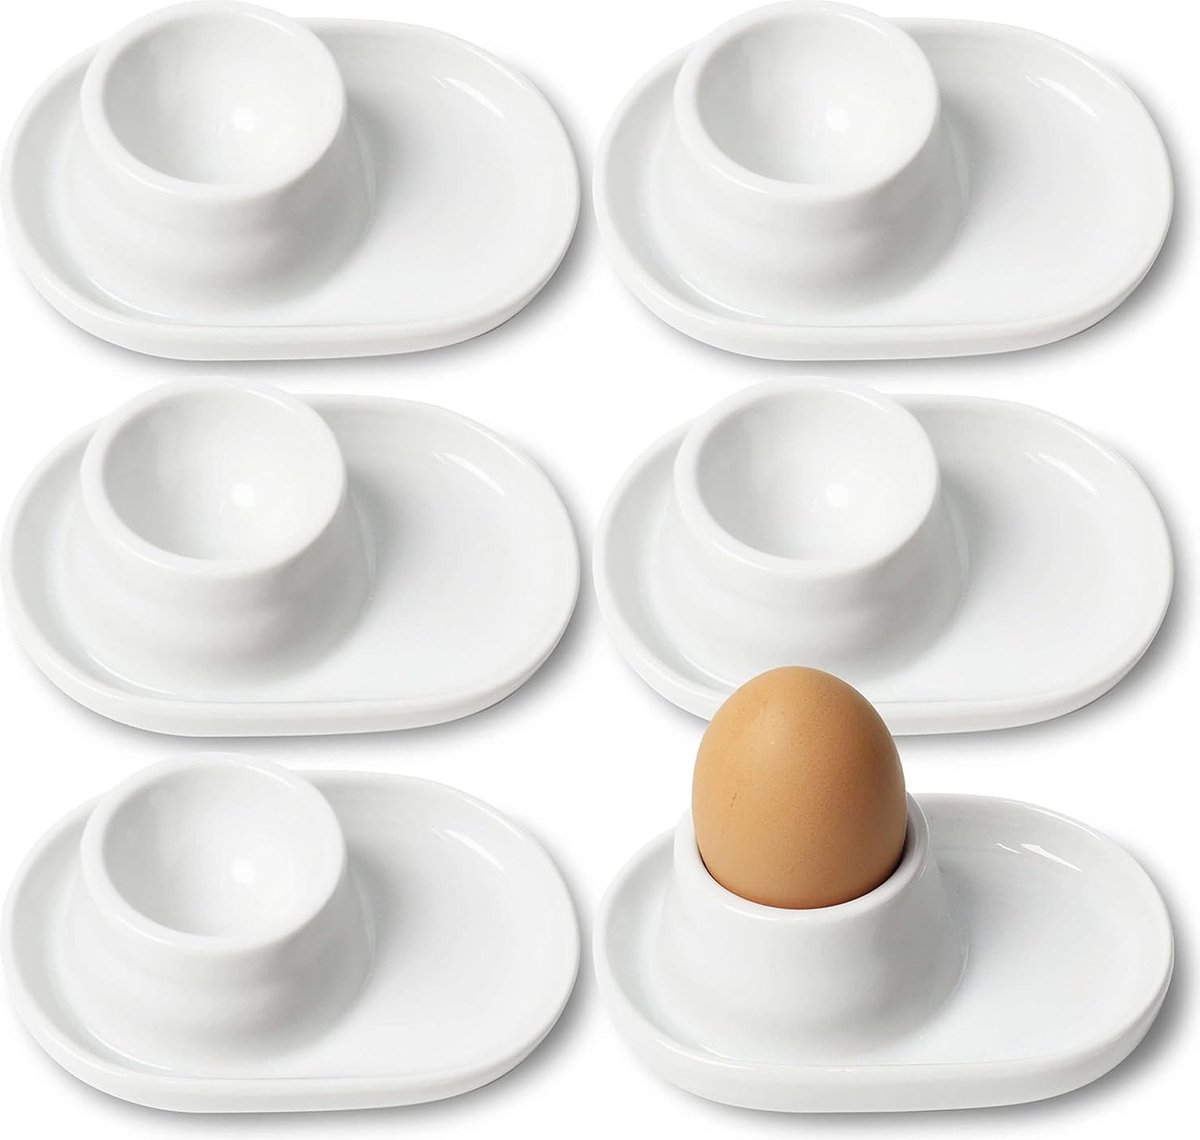 Eierdopjes porselein set van 6 eierdopjes voor harde en zachtgekookte eieren wit porseleinen eierdopje premium eierhouder met geïntegreerde plank voor eierschalen praktische eierhouders